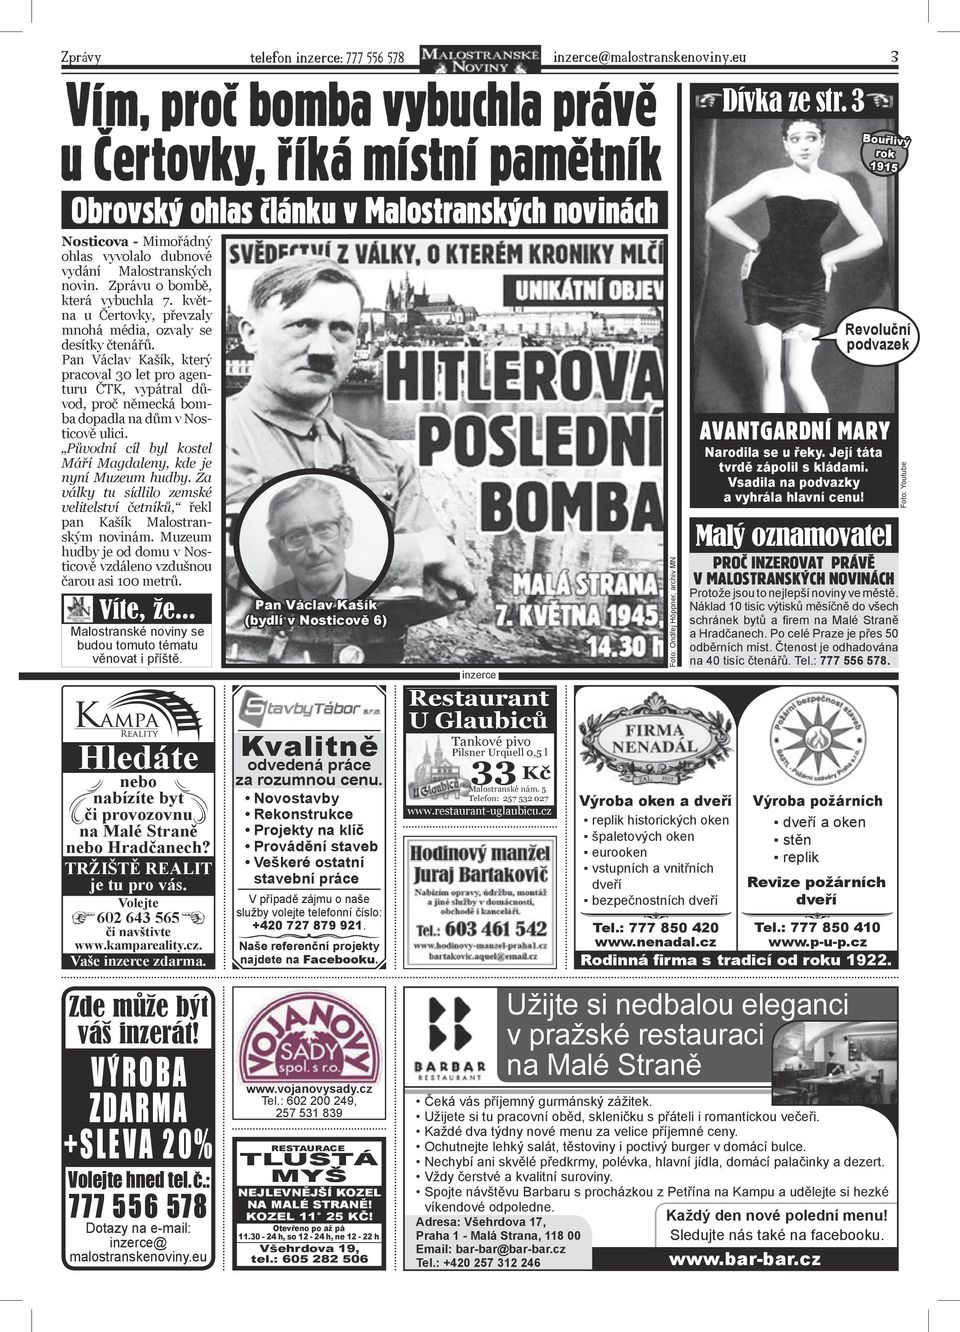 Zprávu o bombě, která vybuchla 7. května u Čertovky, převzaly mnohá média, ozvaly se desítky čtenářů.